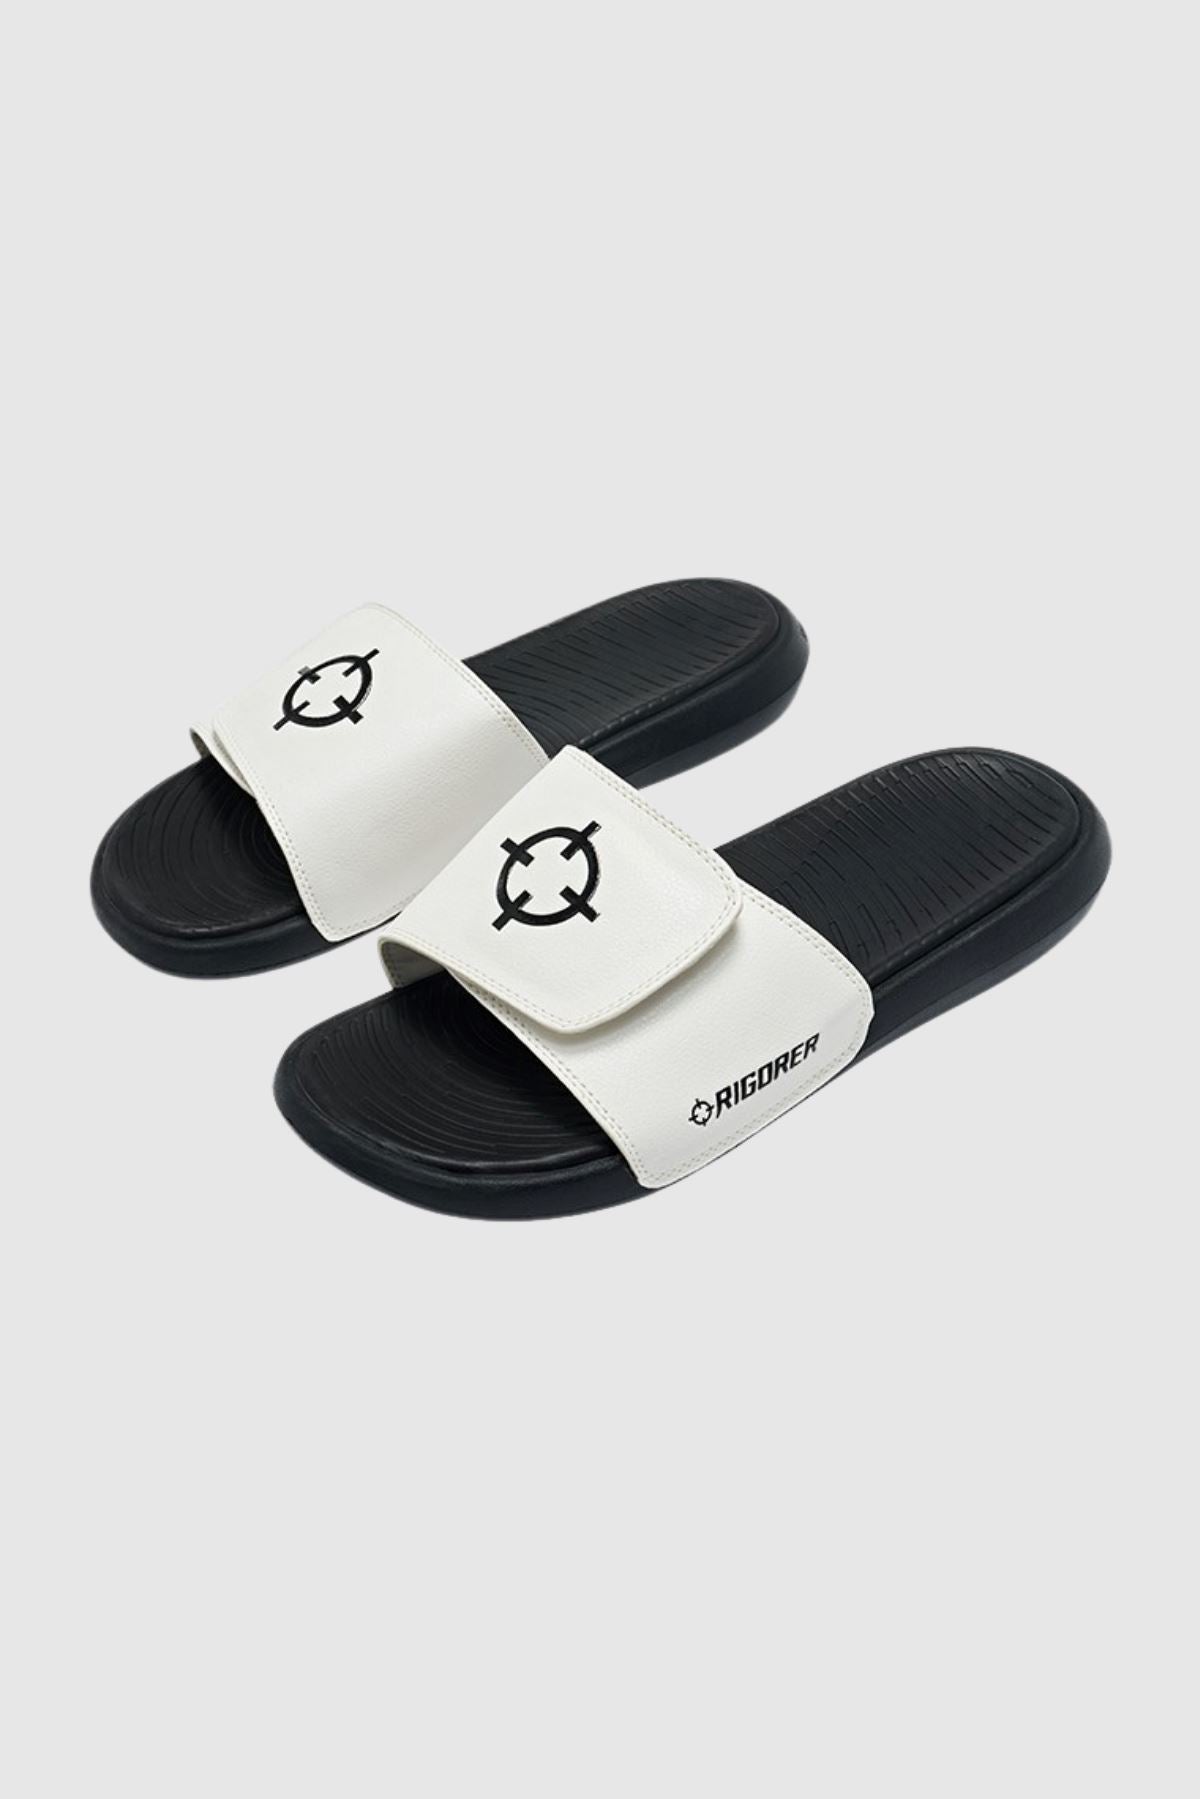 White/Black|Rigorer Adjustable Slides [SL504]